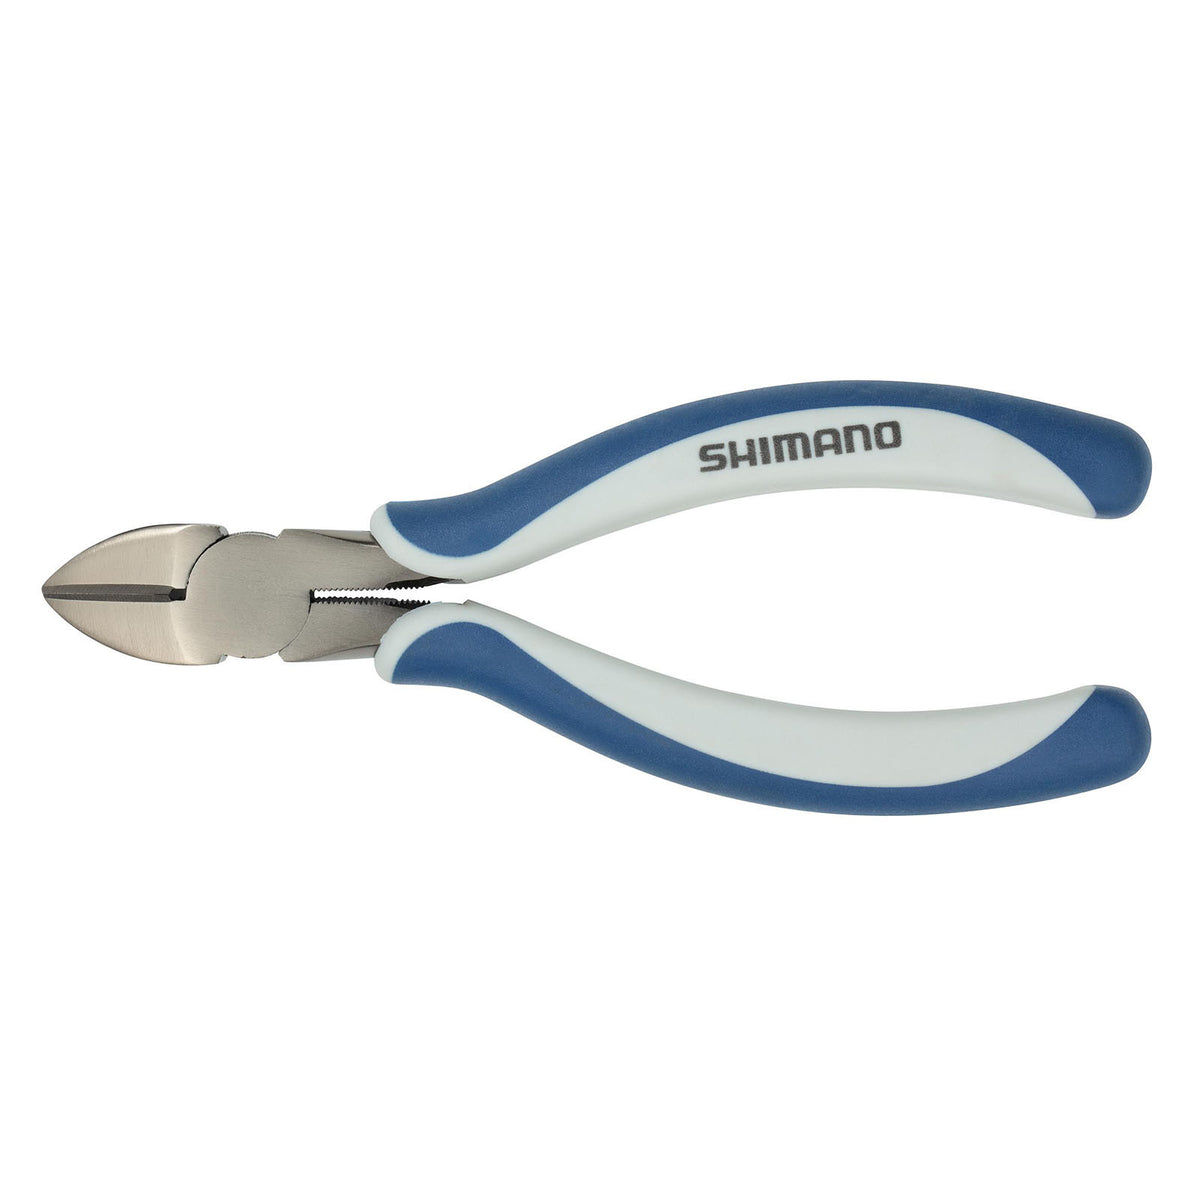 Shimano Brutas Silver Nickel Tools